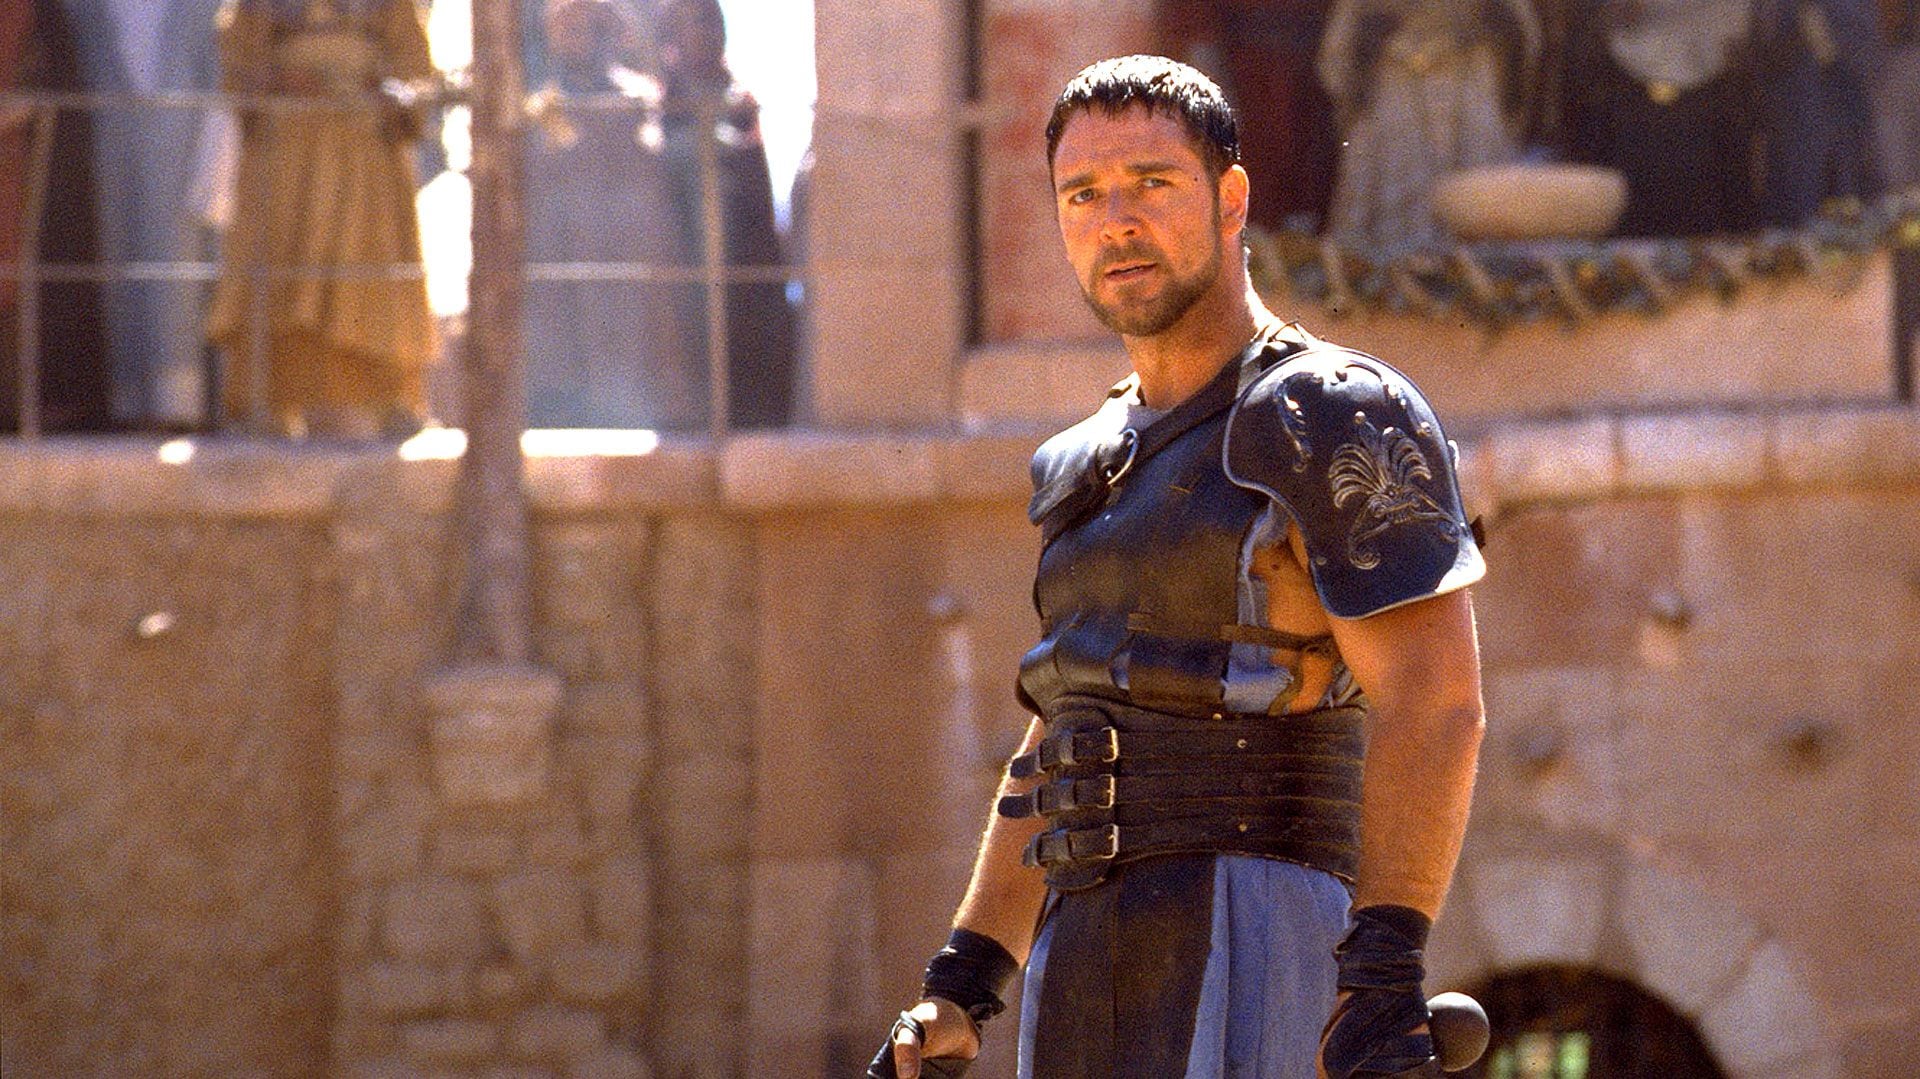 Gladiador aumentó el interés por las películas y series ambientadas en Grecia y Roma, pero también creció la venta de libros de ficción e históricos sobre estas civilizaciones.